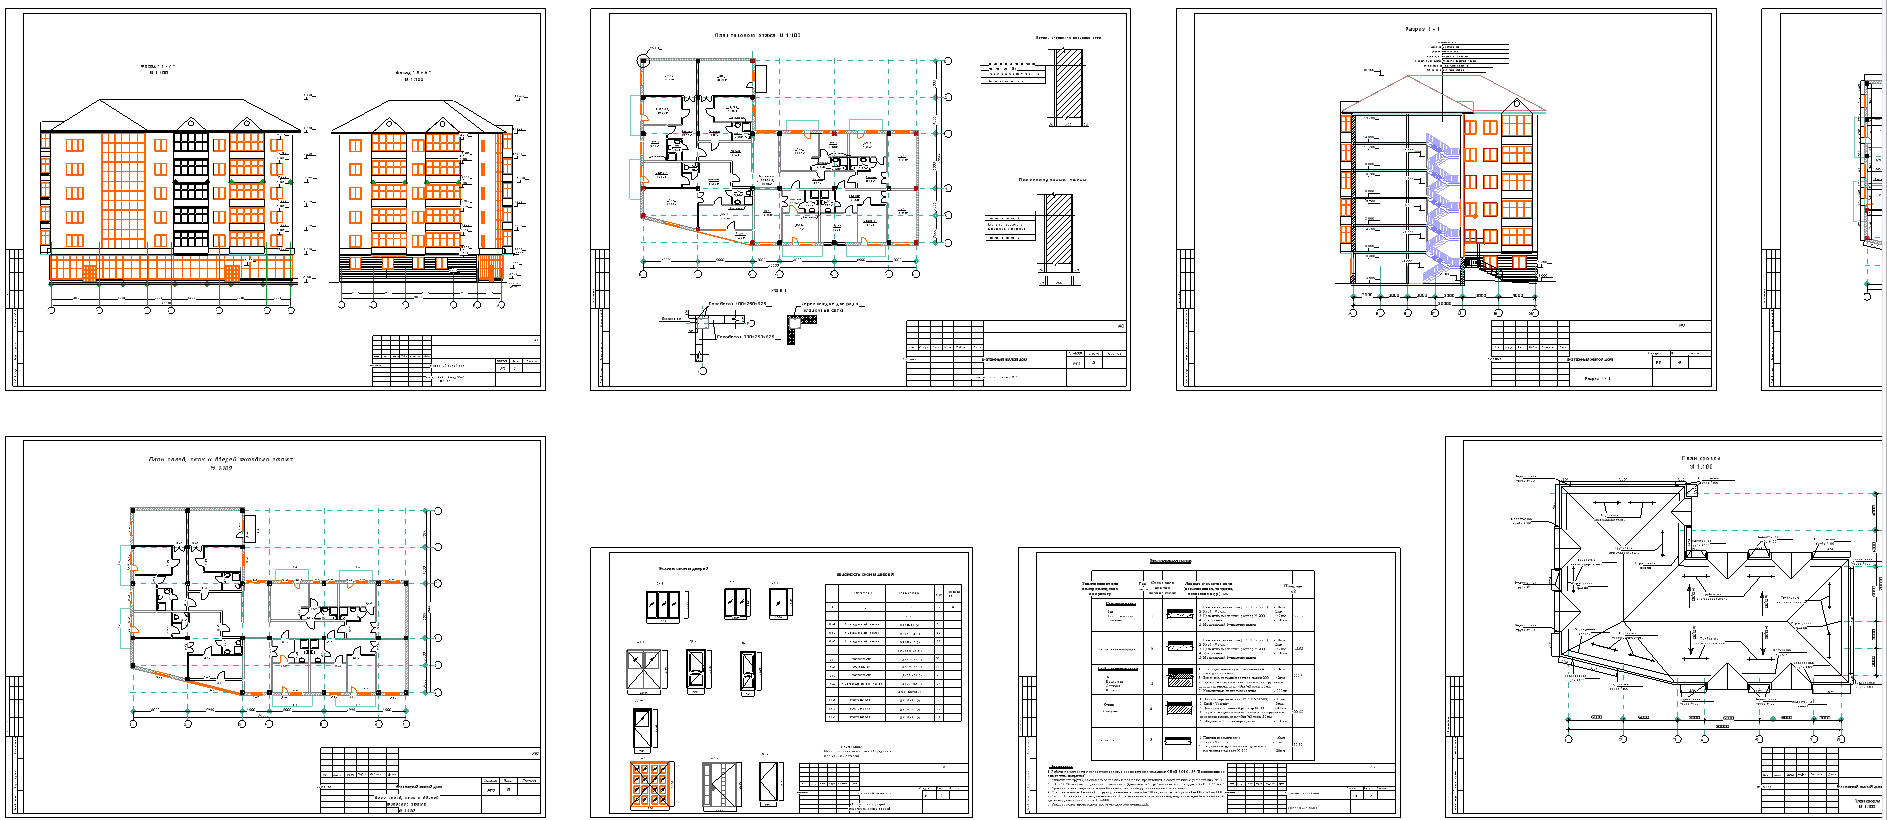 План фундамента многоэтажного жилого дома